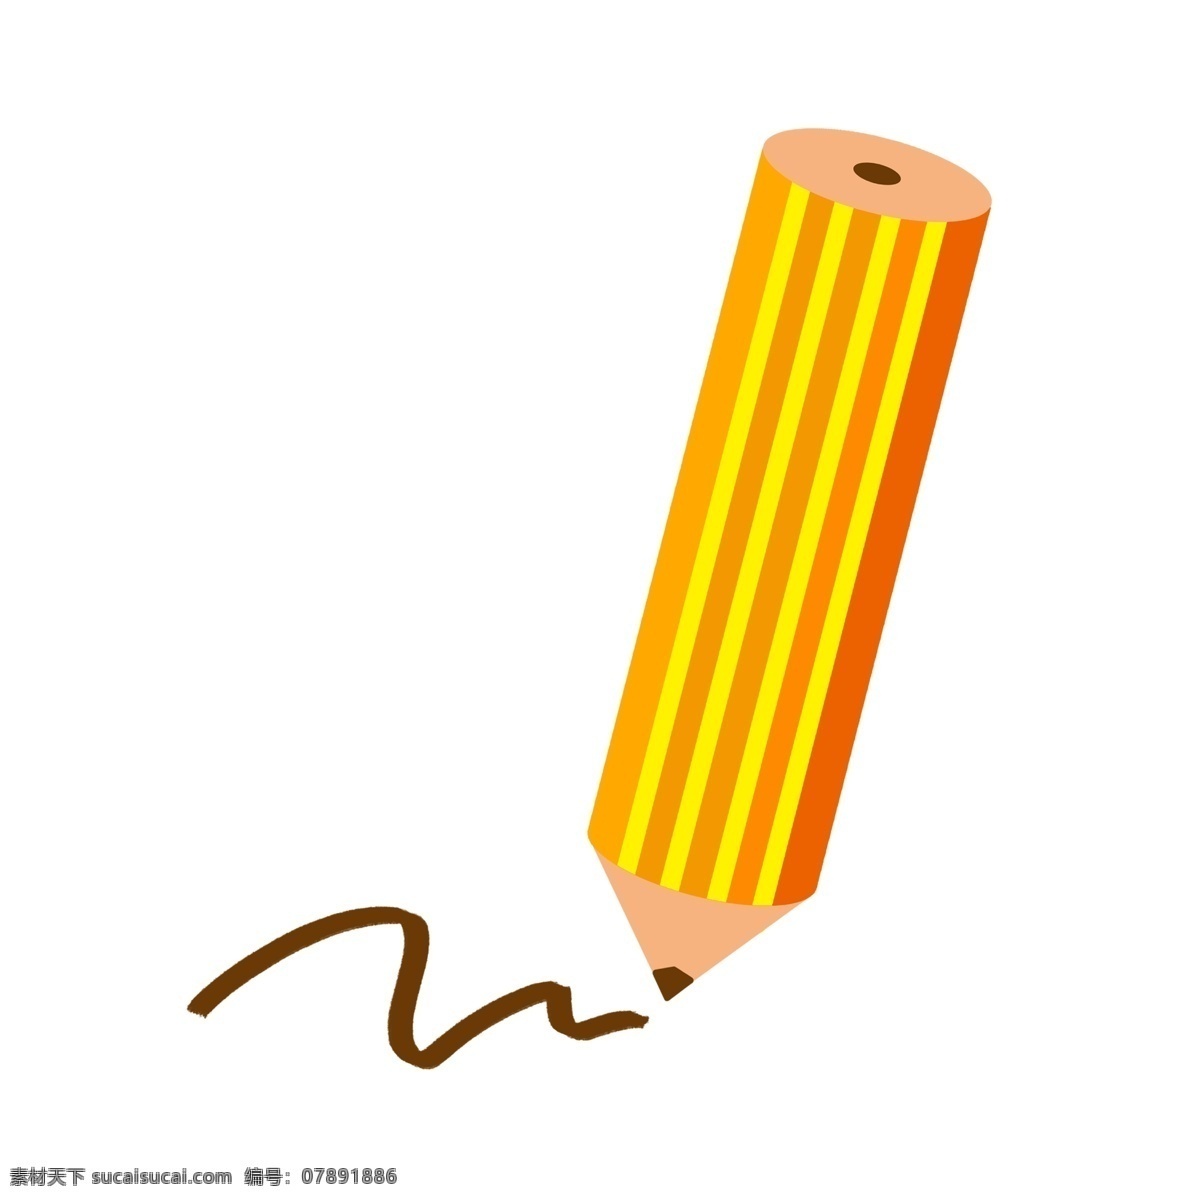 支 黄色 铅笔 插画 卡通 一支铅笔 学习铅笔 黄色铅笔 黄色笔 学习工具 文具 笔